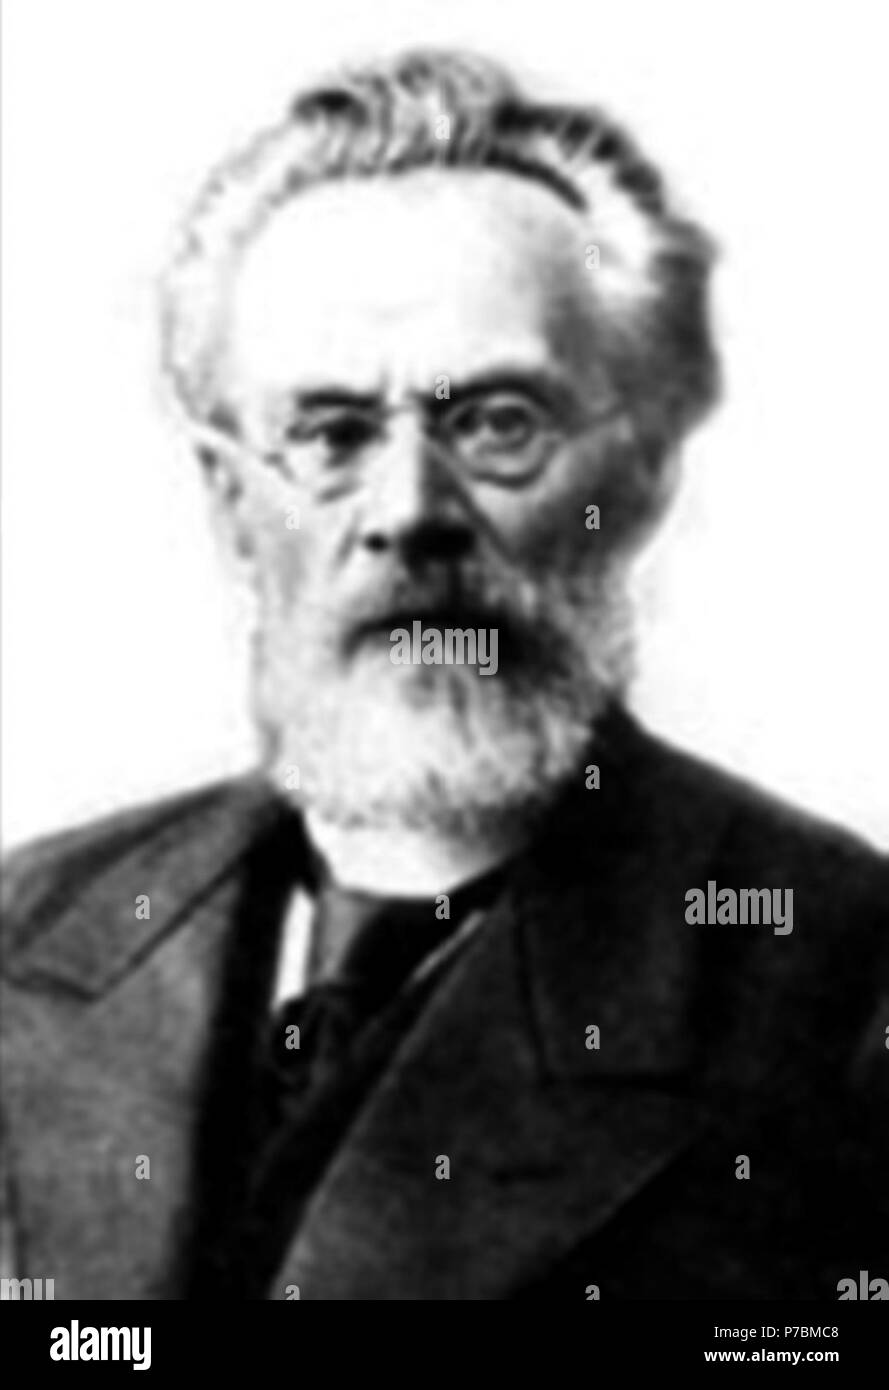 Inglese: questa è una foto della Lev Tikhomirov nei suoi ultimi anni, probabilmente preso intorno alla fine del secolo scorso. Probabilmente 1890 81 Tikhomirov2 Foto Stock